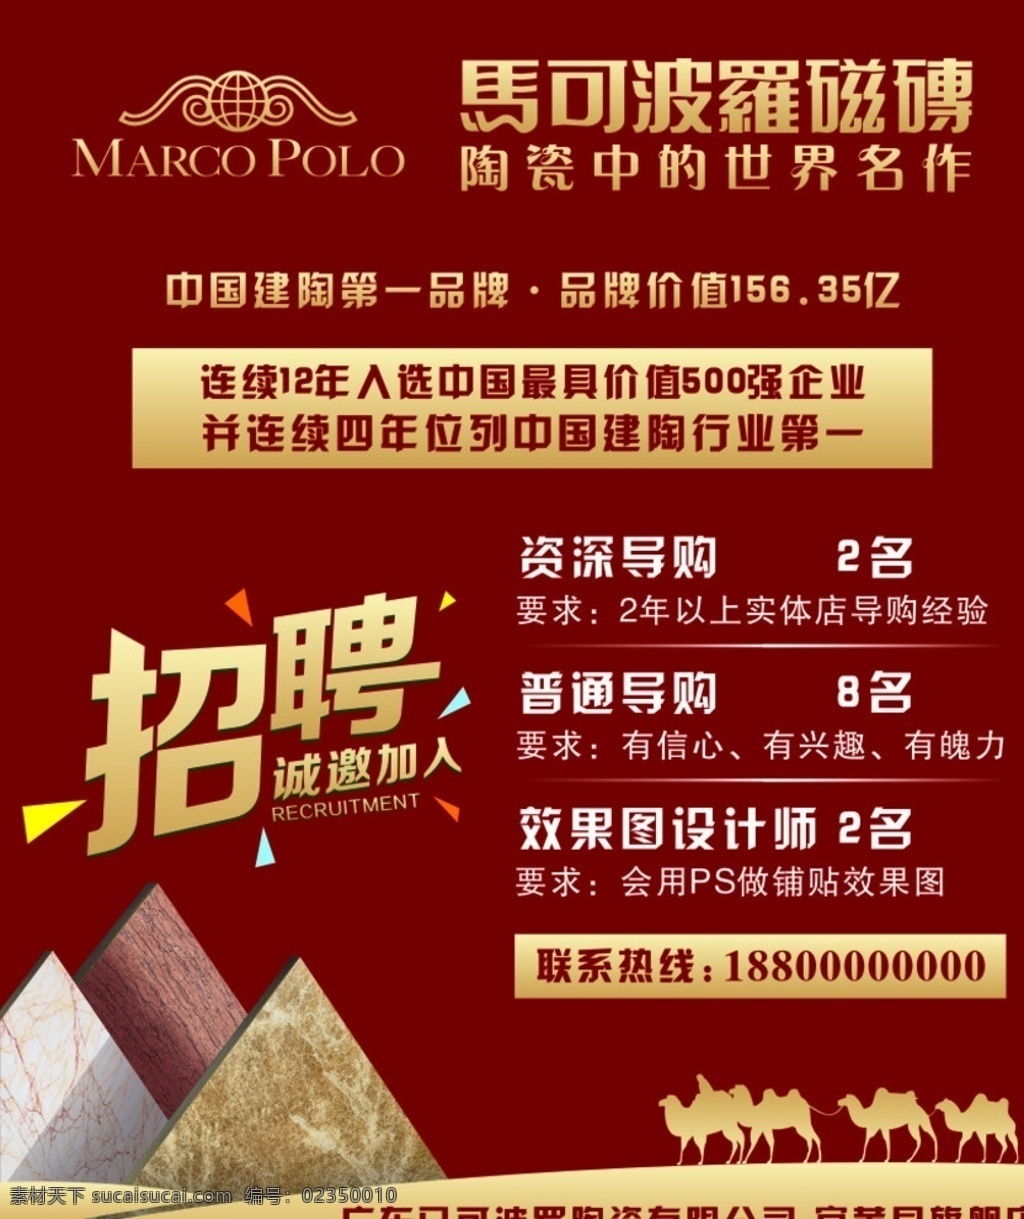 宜黄县 马可波罗 磁砖 招聘 海报 喷绘 室外 写真 瓷砖 活动 广告 招人 金色 2016 年